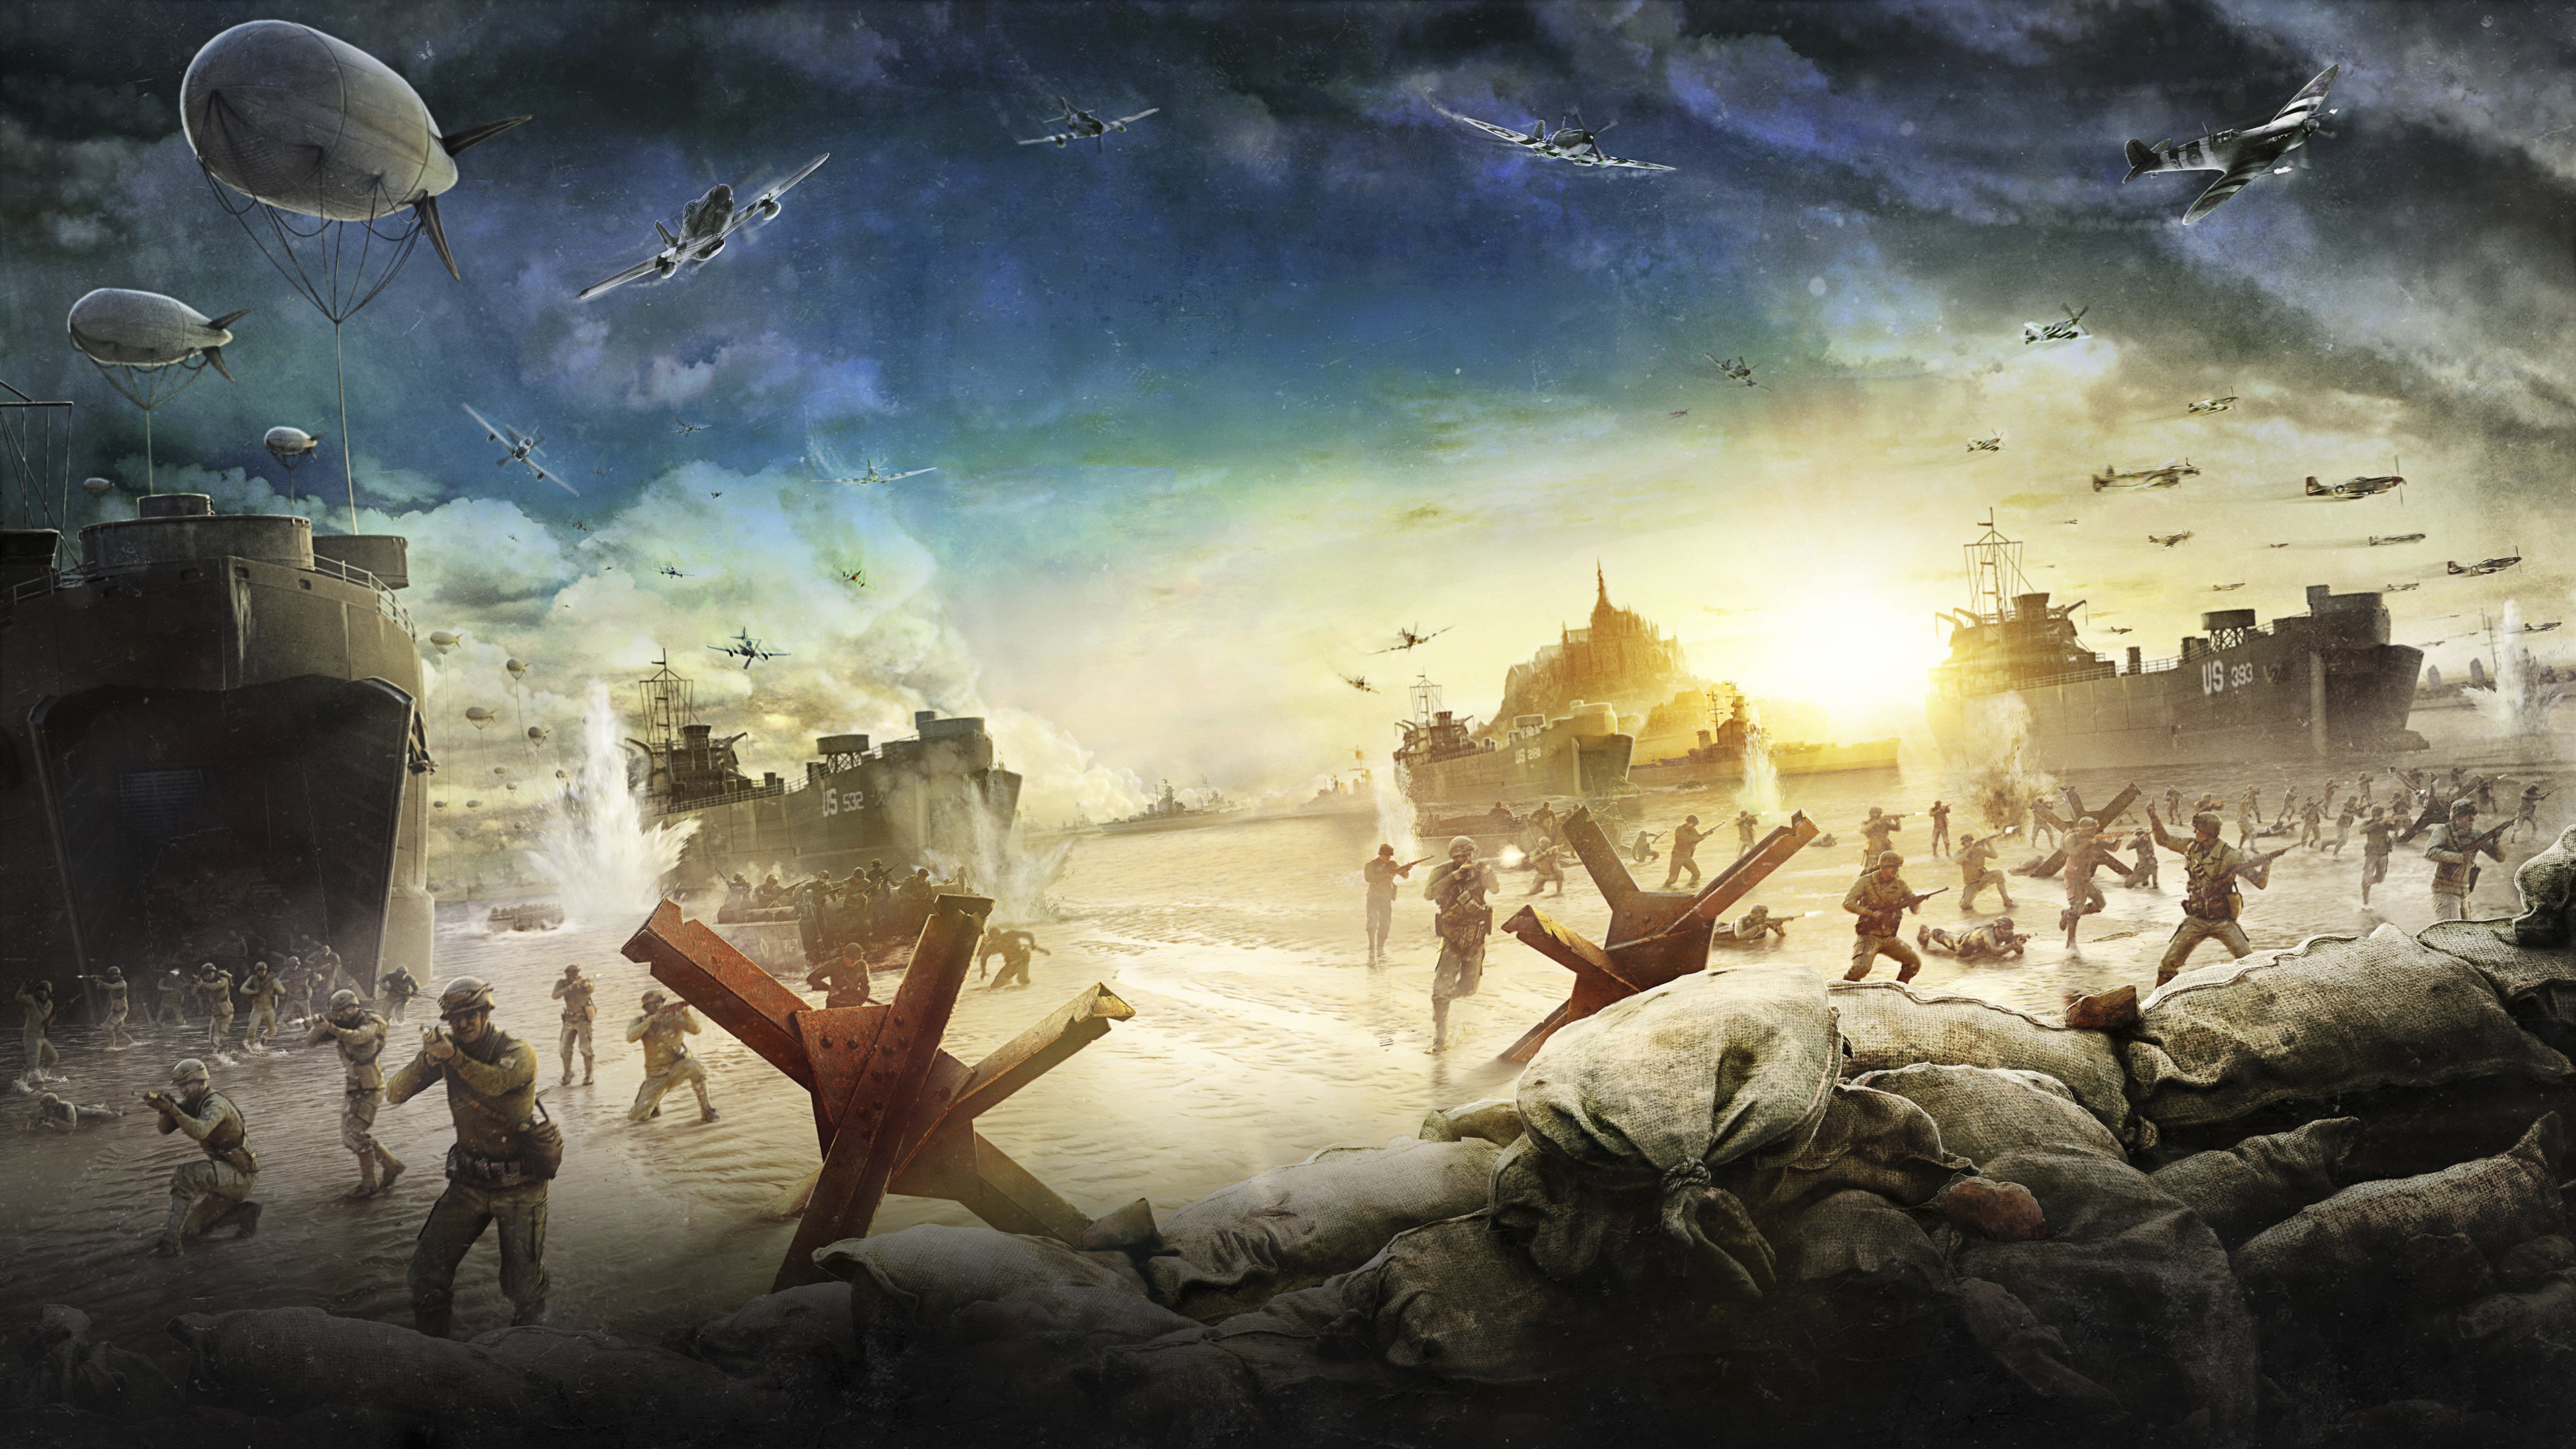 Arte de fondo de Sniper Elite 5 mostrando soldados en una playa